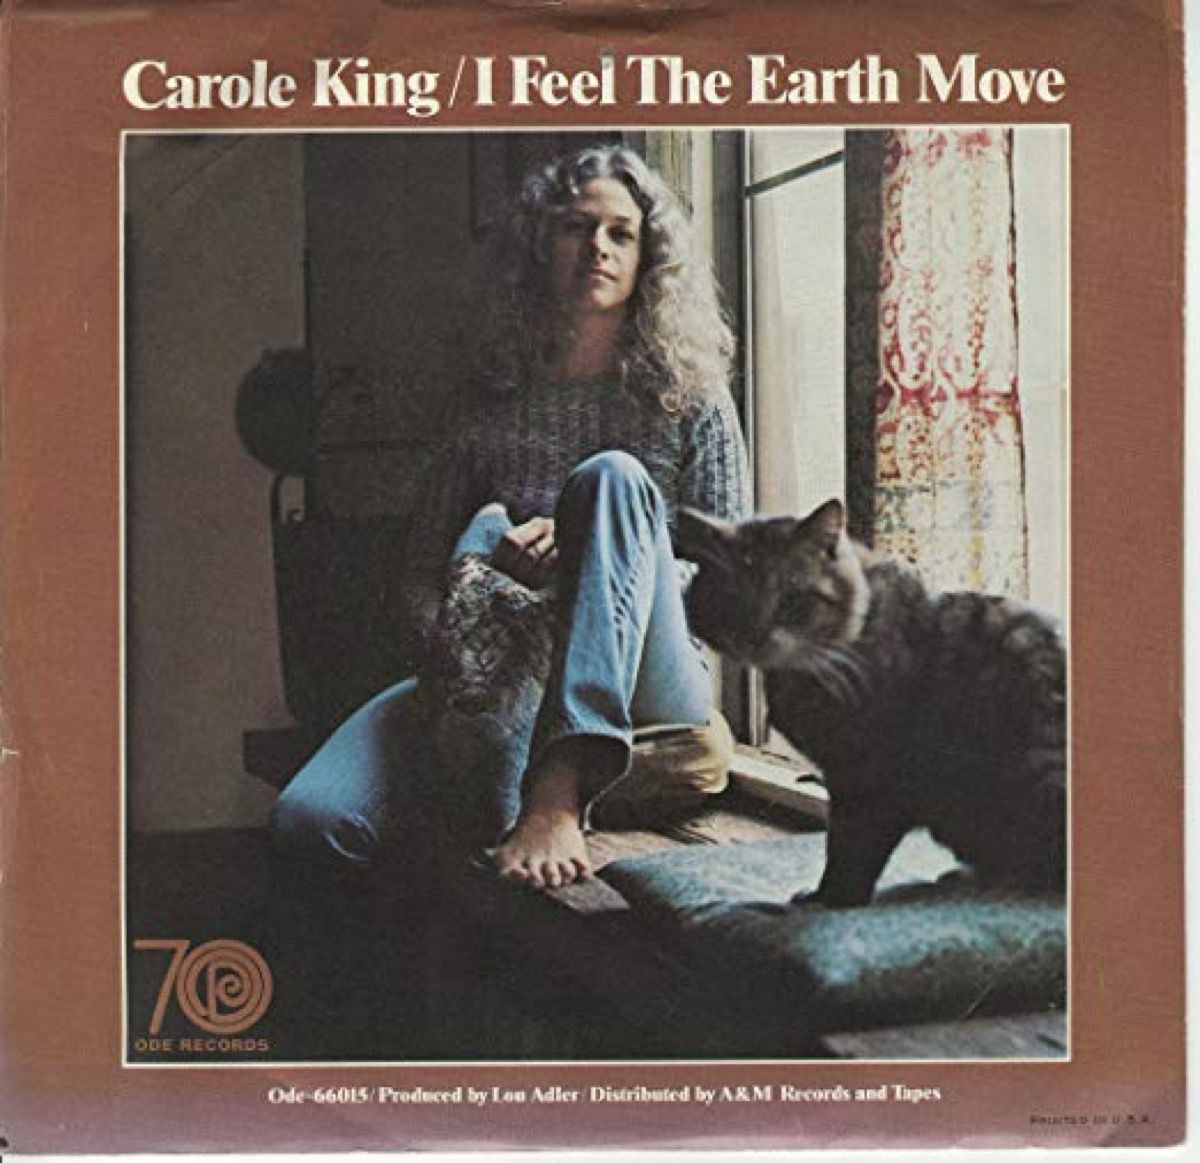 कैरोल किंग के लिए एल्बम कवर, मुझे पृथ्वी की चाल महसूस होती है, 1971 का गीत